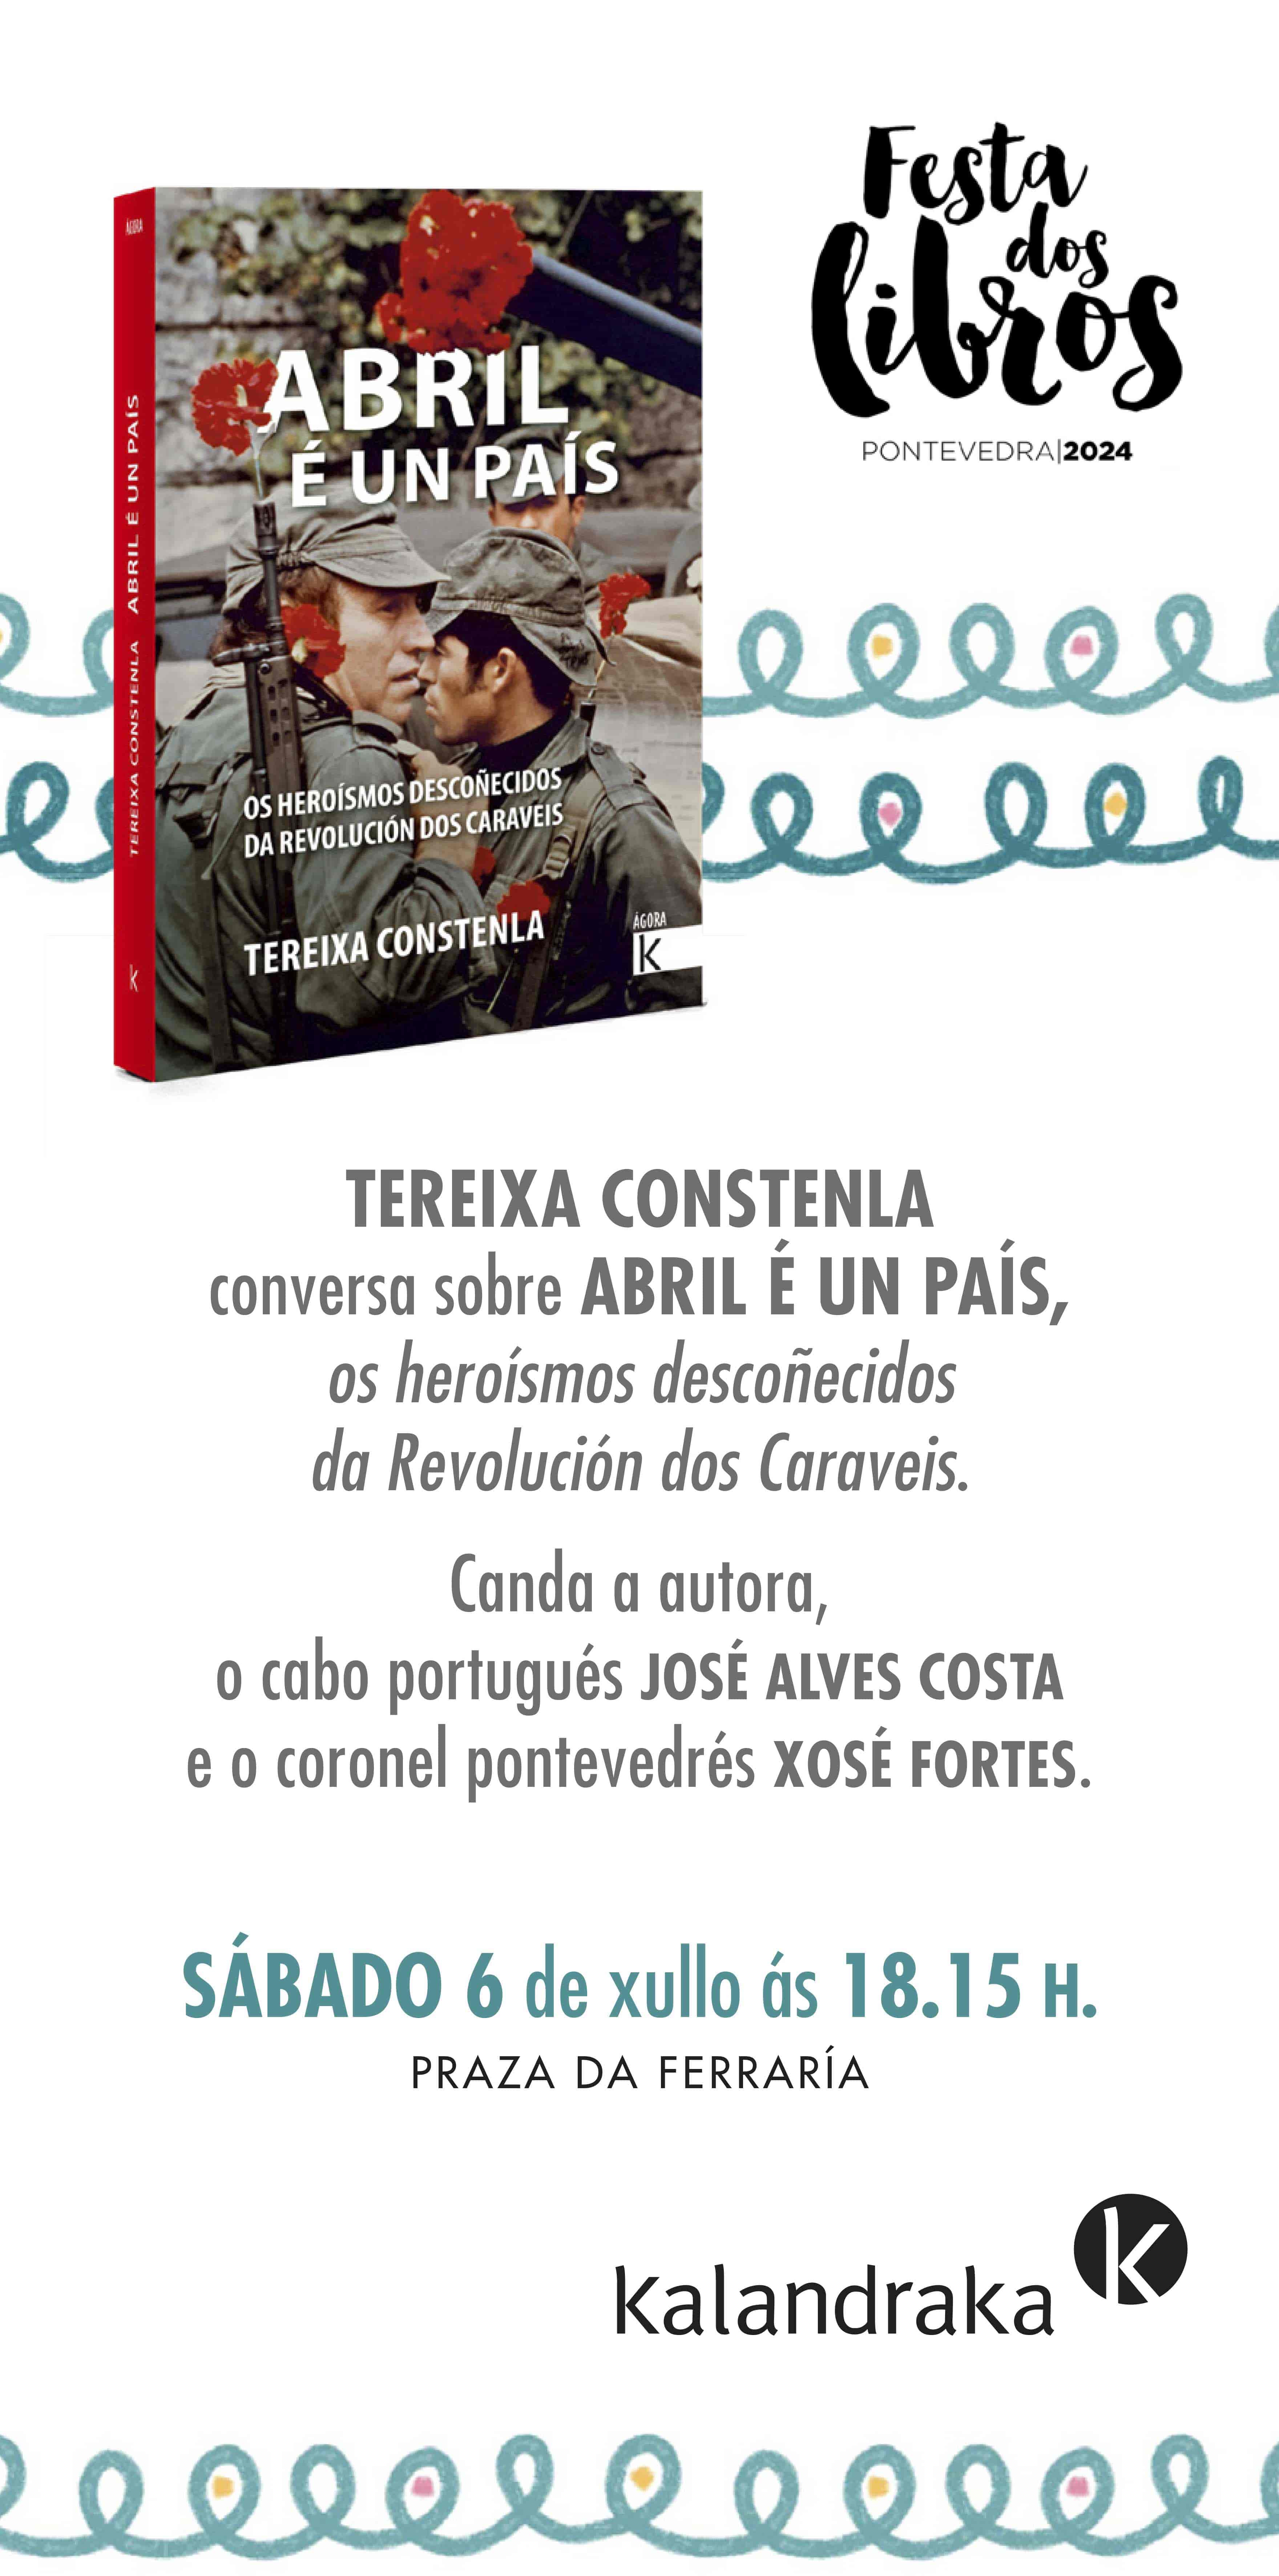 FESTA DOS LIBROS DE PONTEVEDRA: TEREIXA CONSTENLA PRESENTA “ABRIL É UN PAÍS”